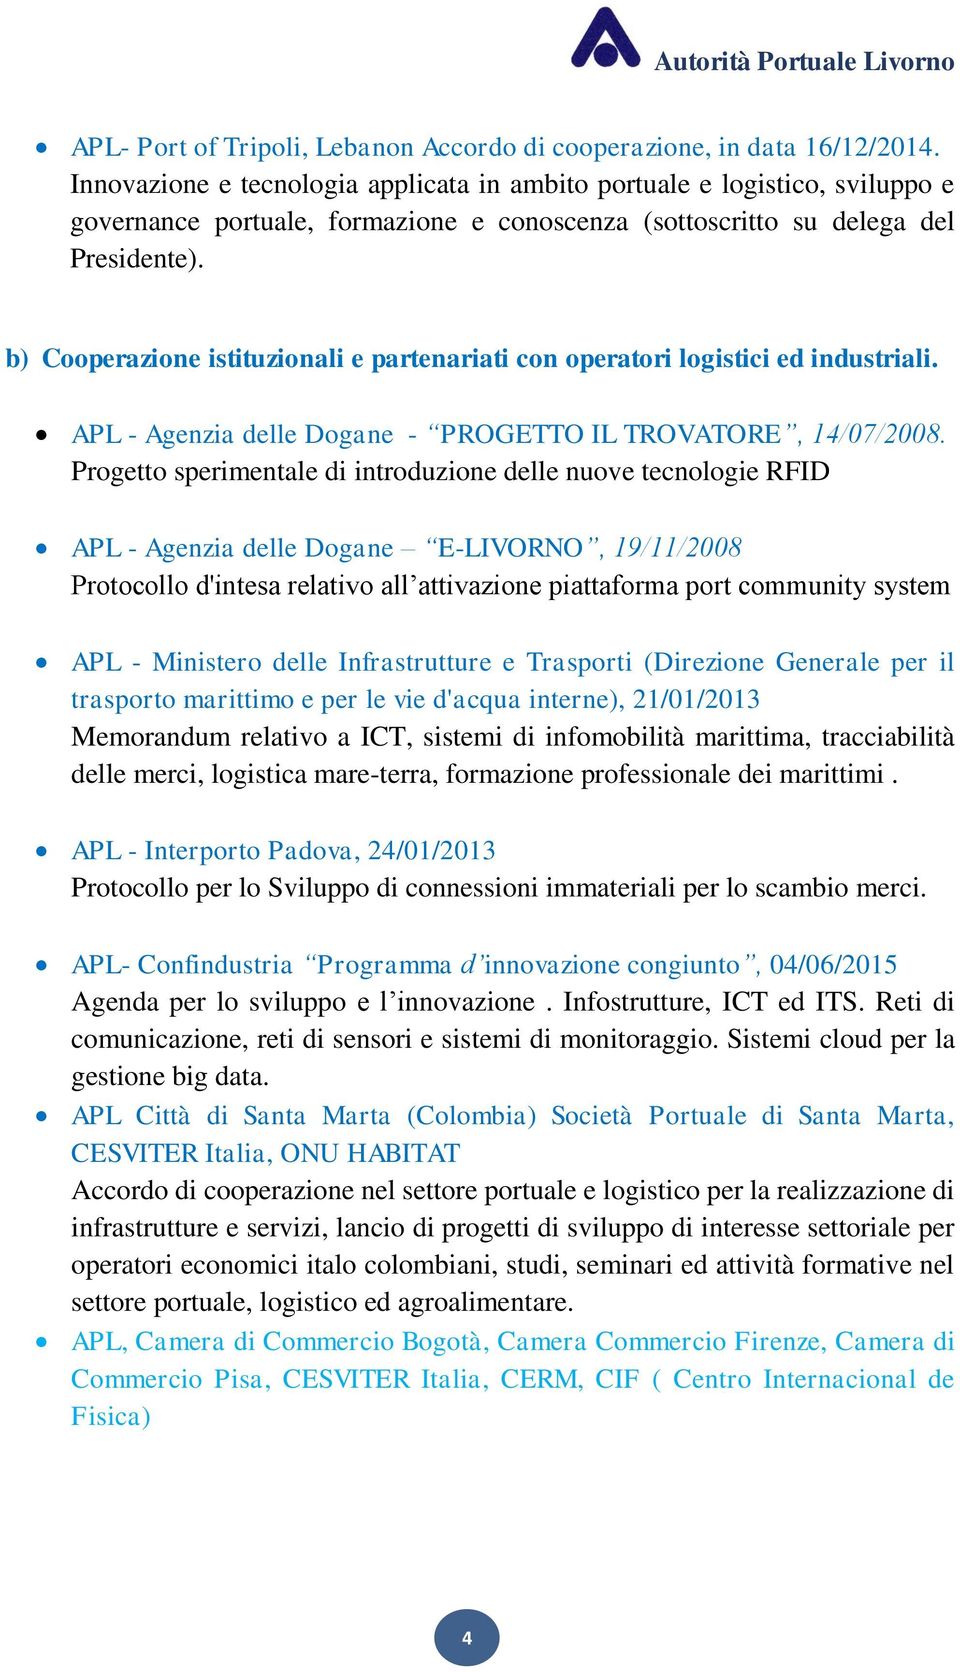 b) Cooperazione istituzionali e partenariati con operatori logistici ed industriali. APL - Agenzia delle Dogane - PROGETTO IL TROVATORE, 14/07/2008.